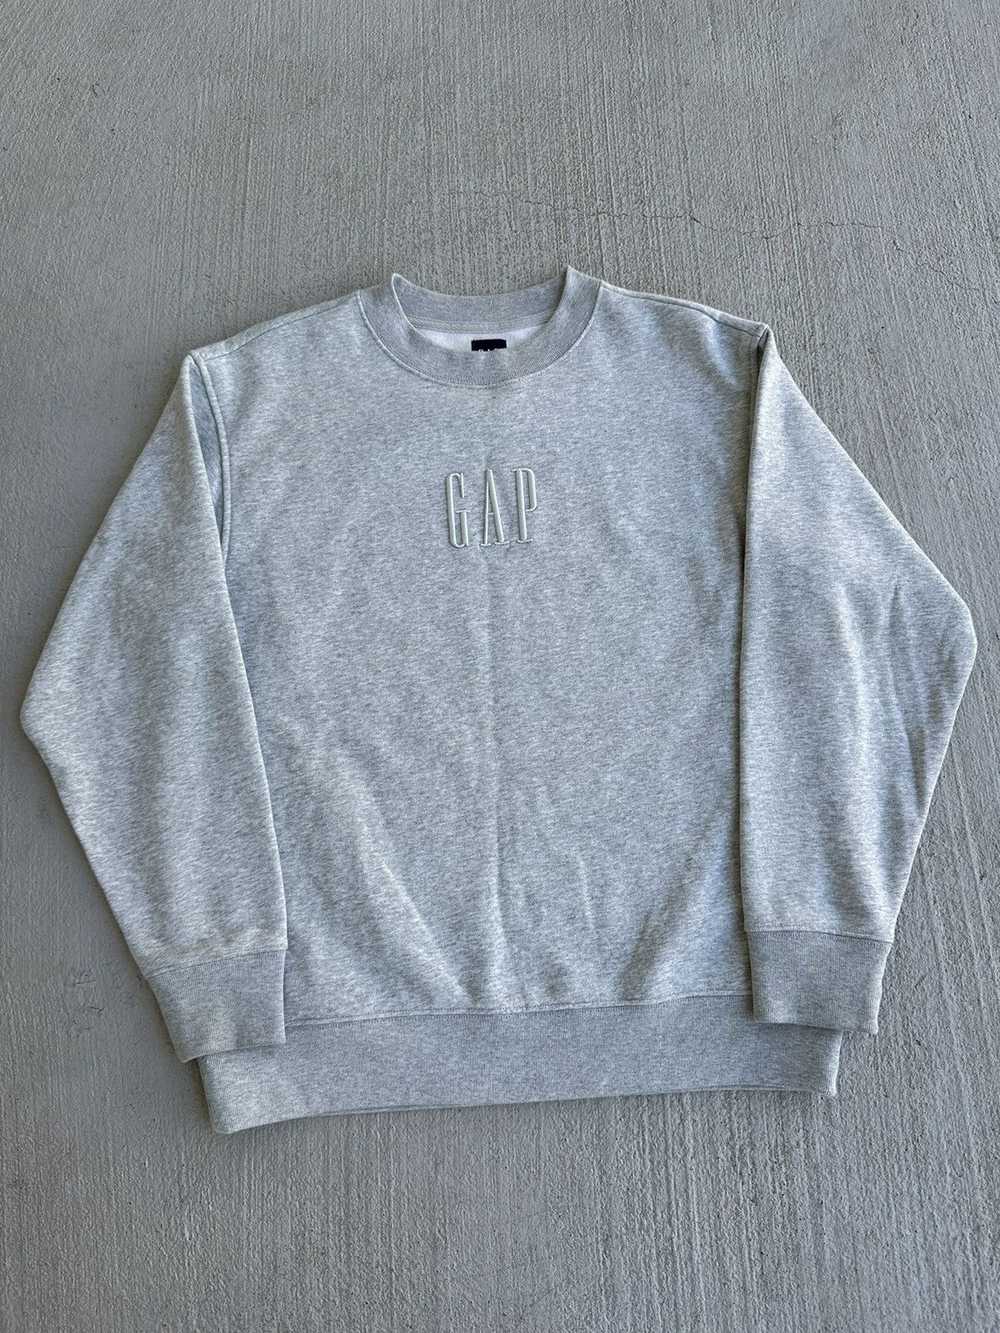 Gap × Streetwear × Vintage Gap Sweatshirt - image 2